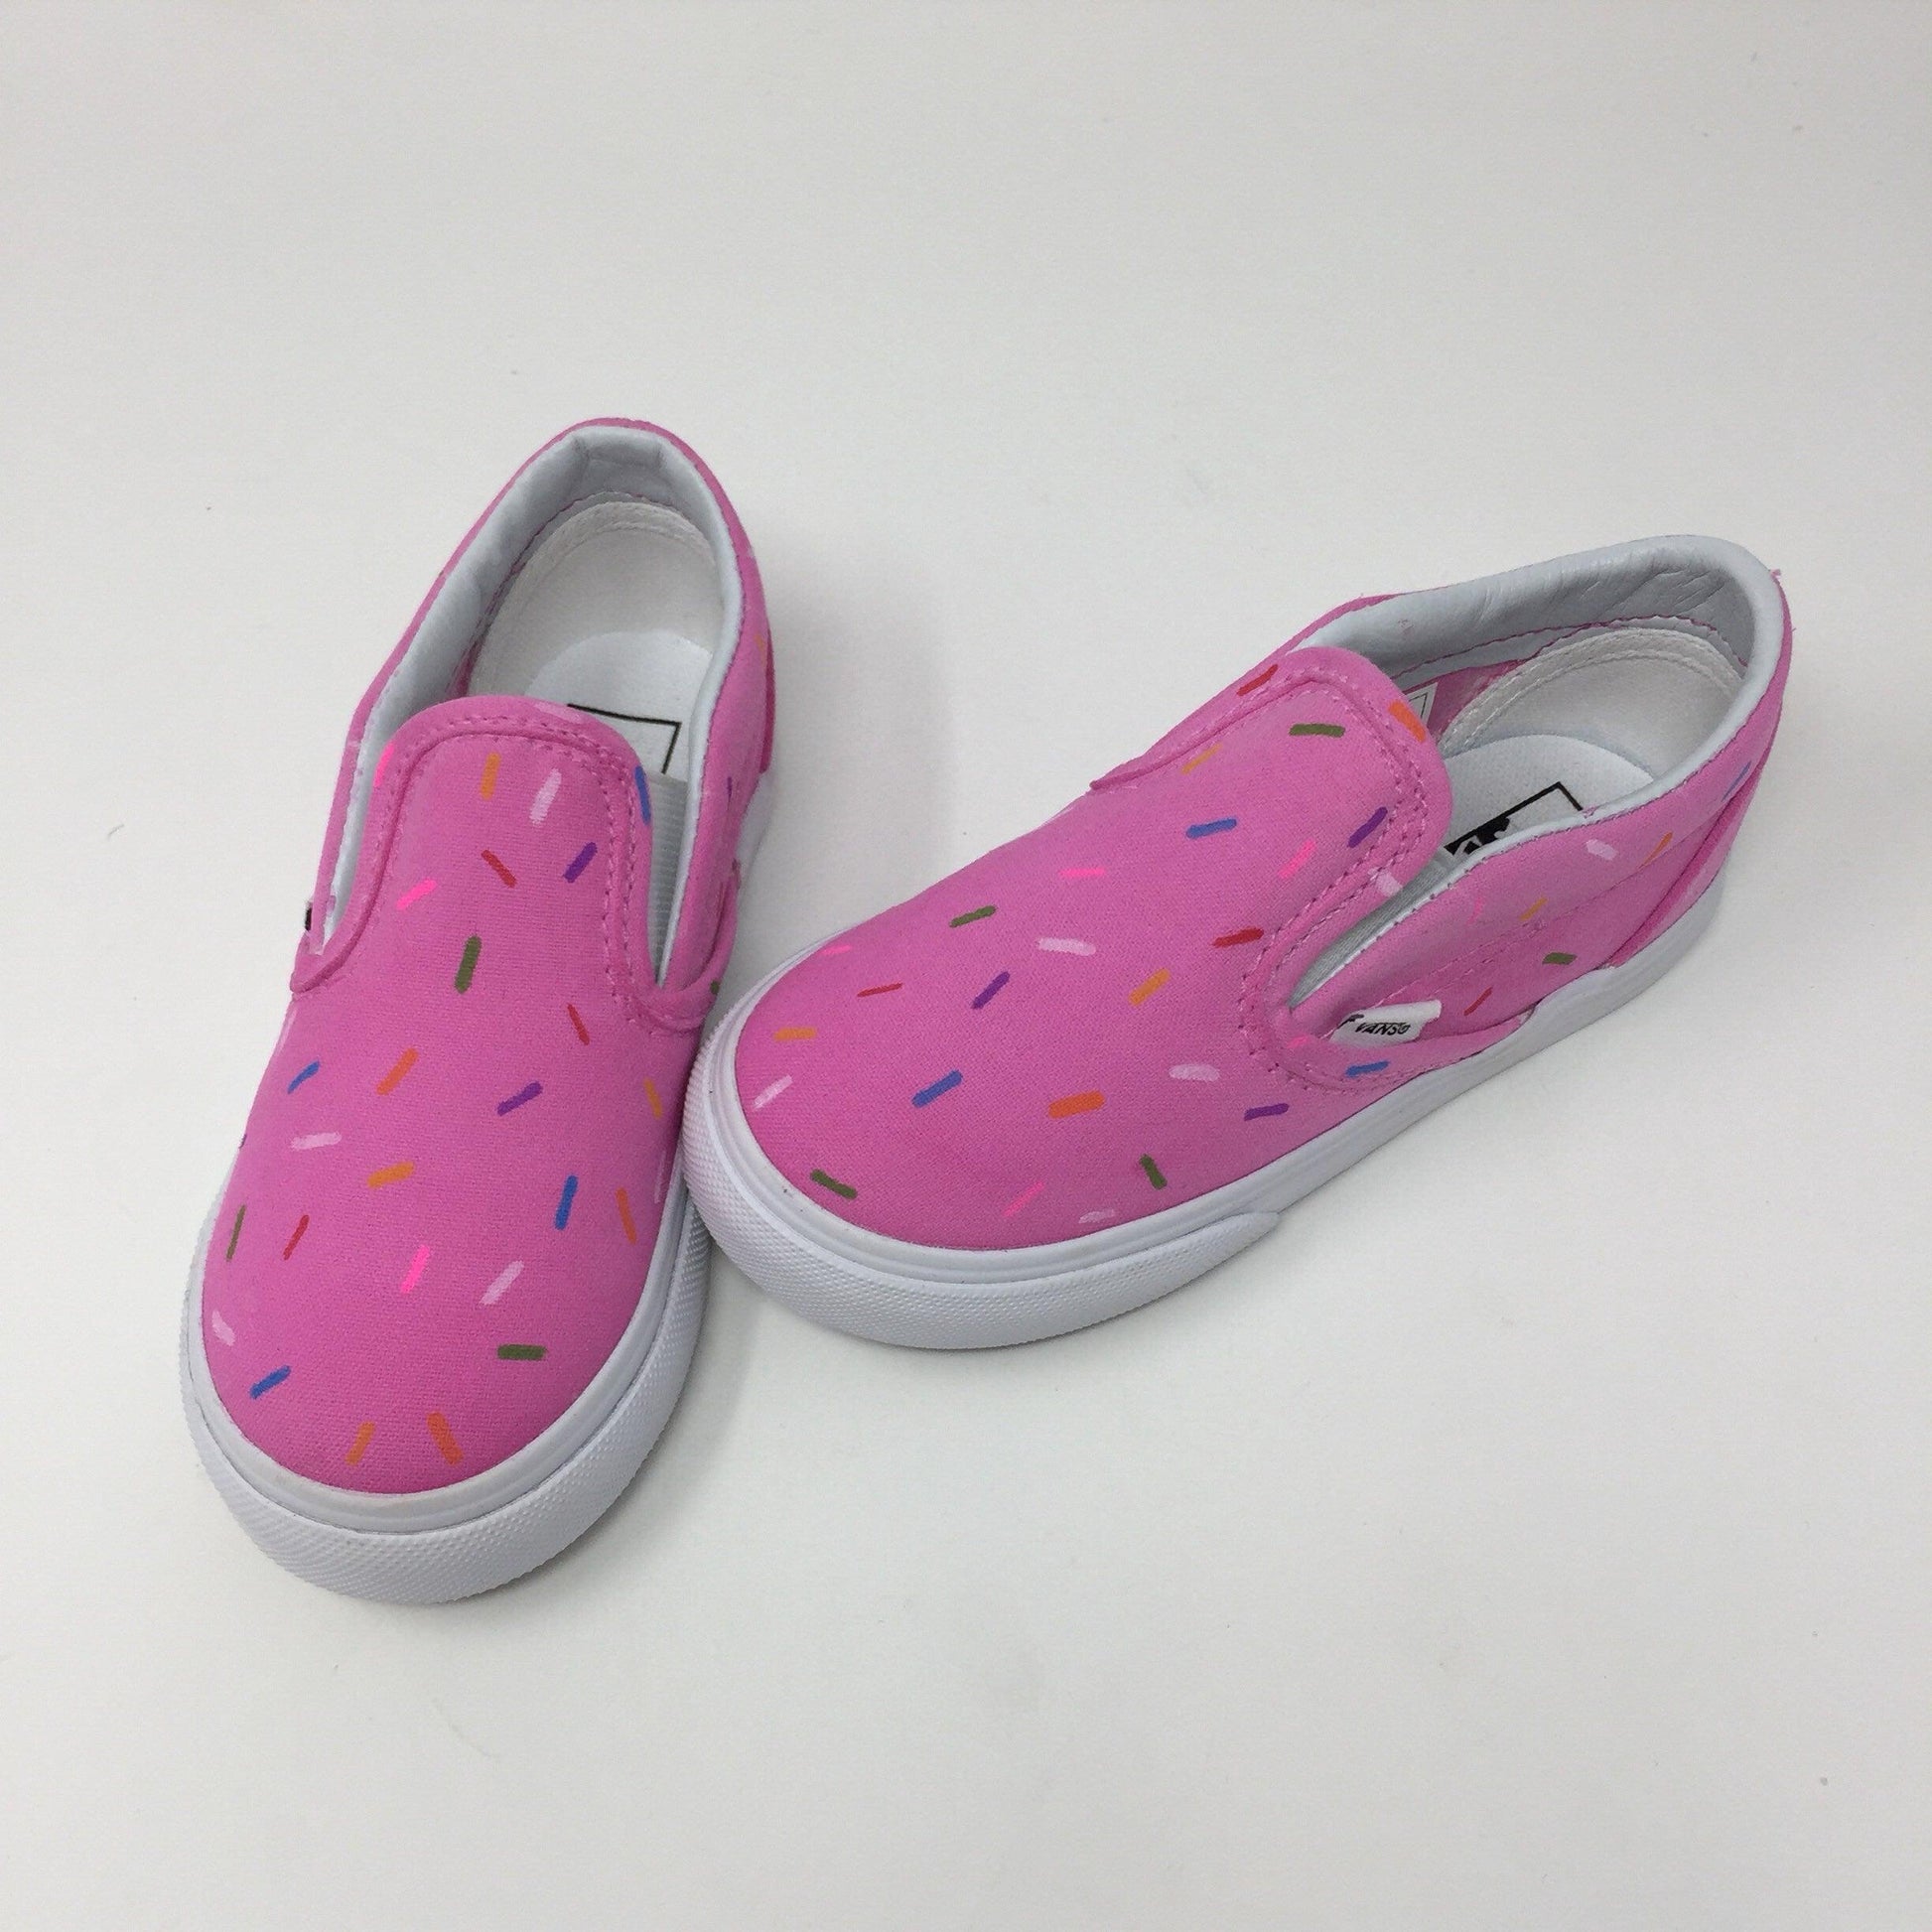 Sprinkle Donut Toddler Shoes